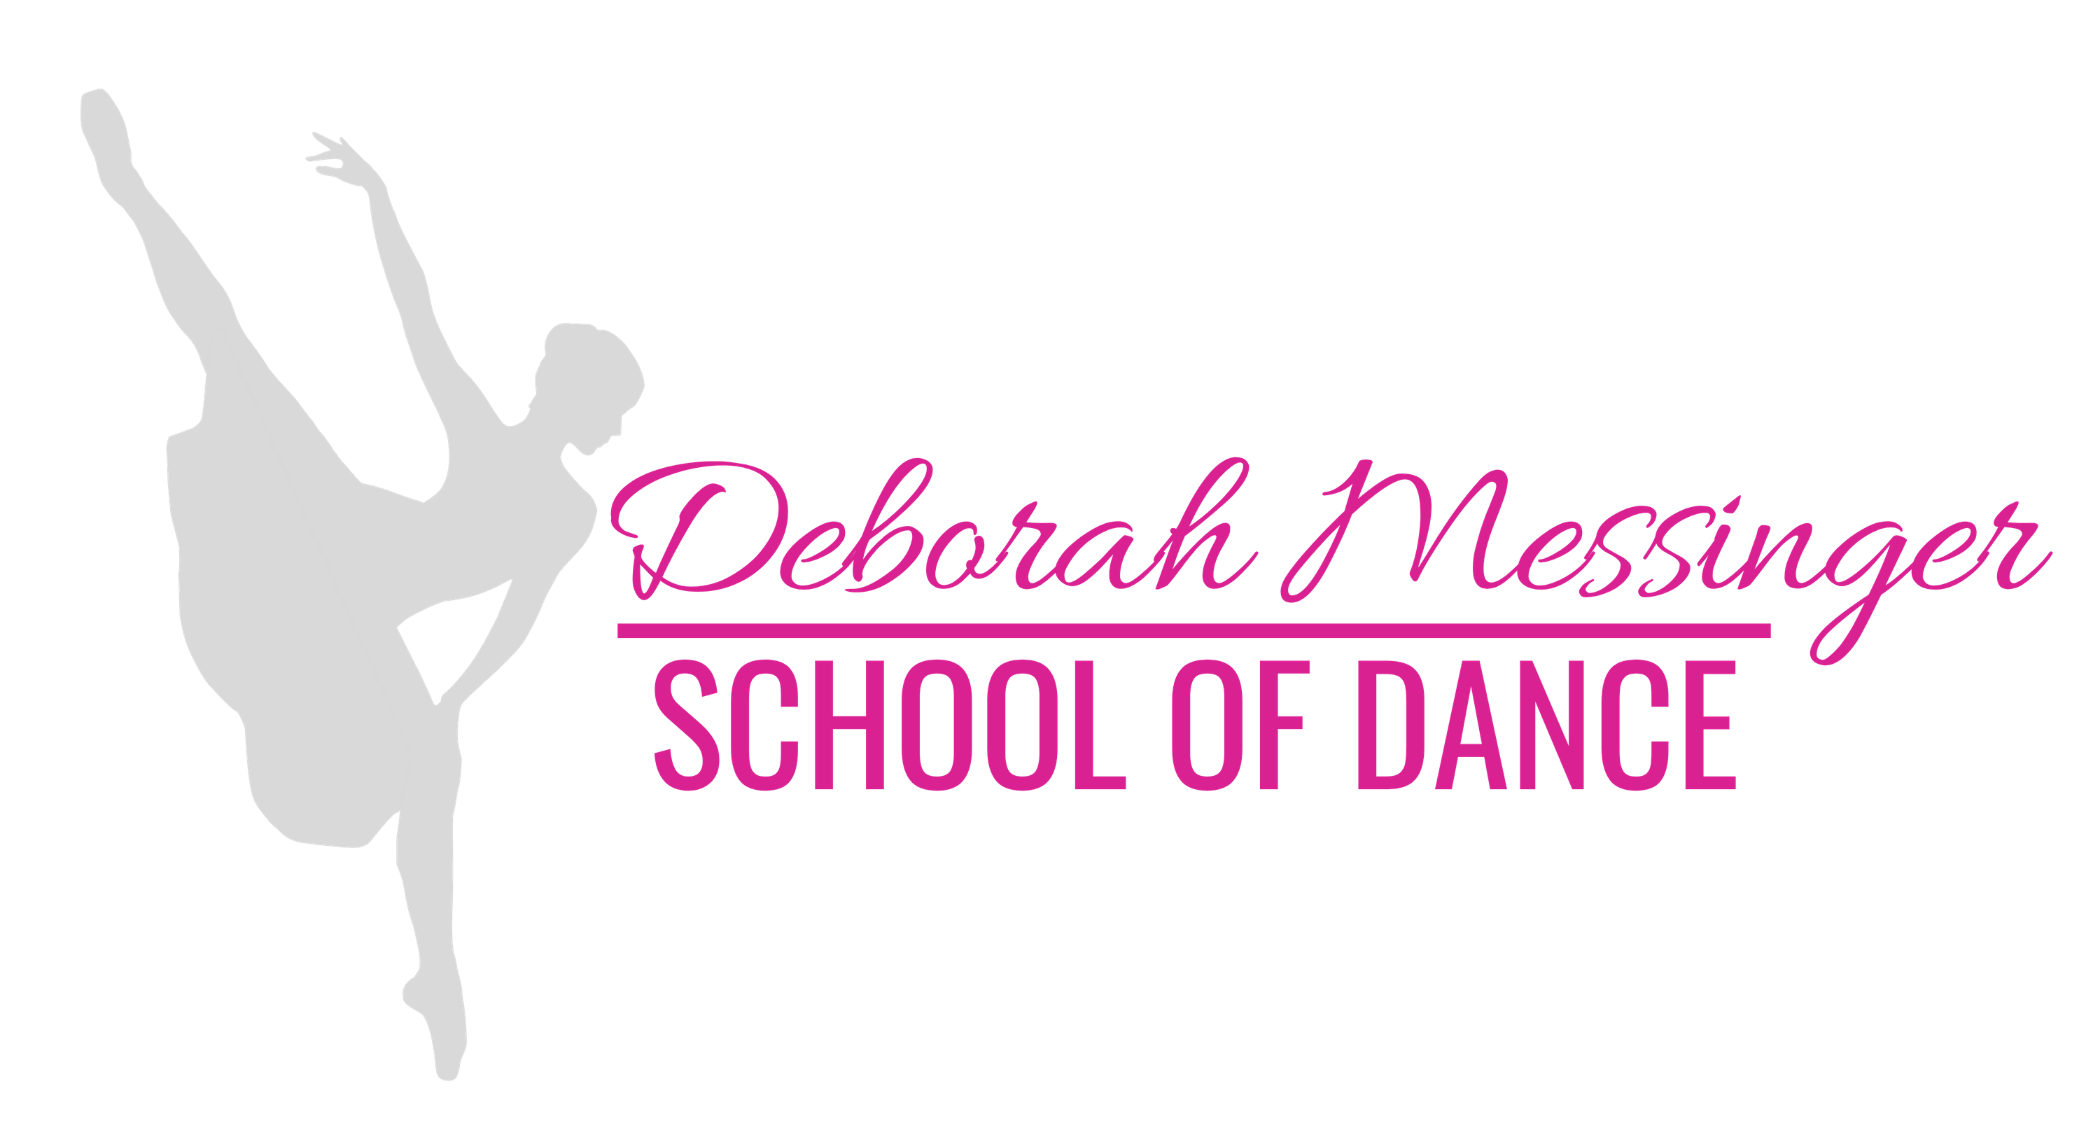 Deborah Messinger School of Dance